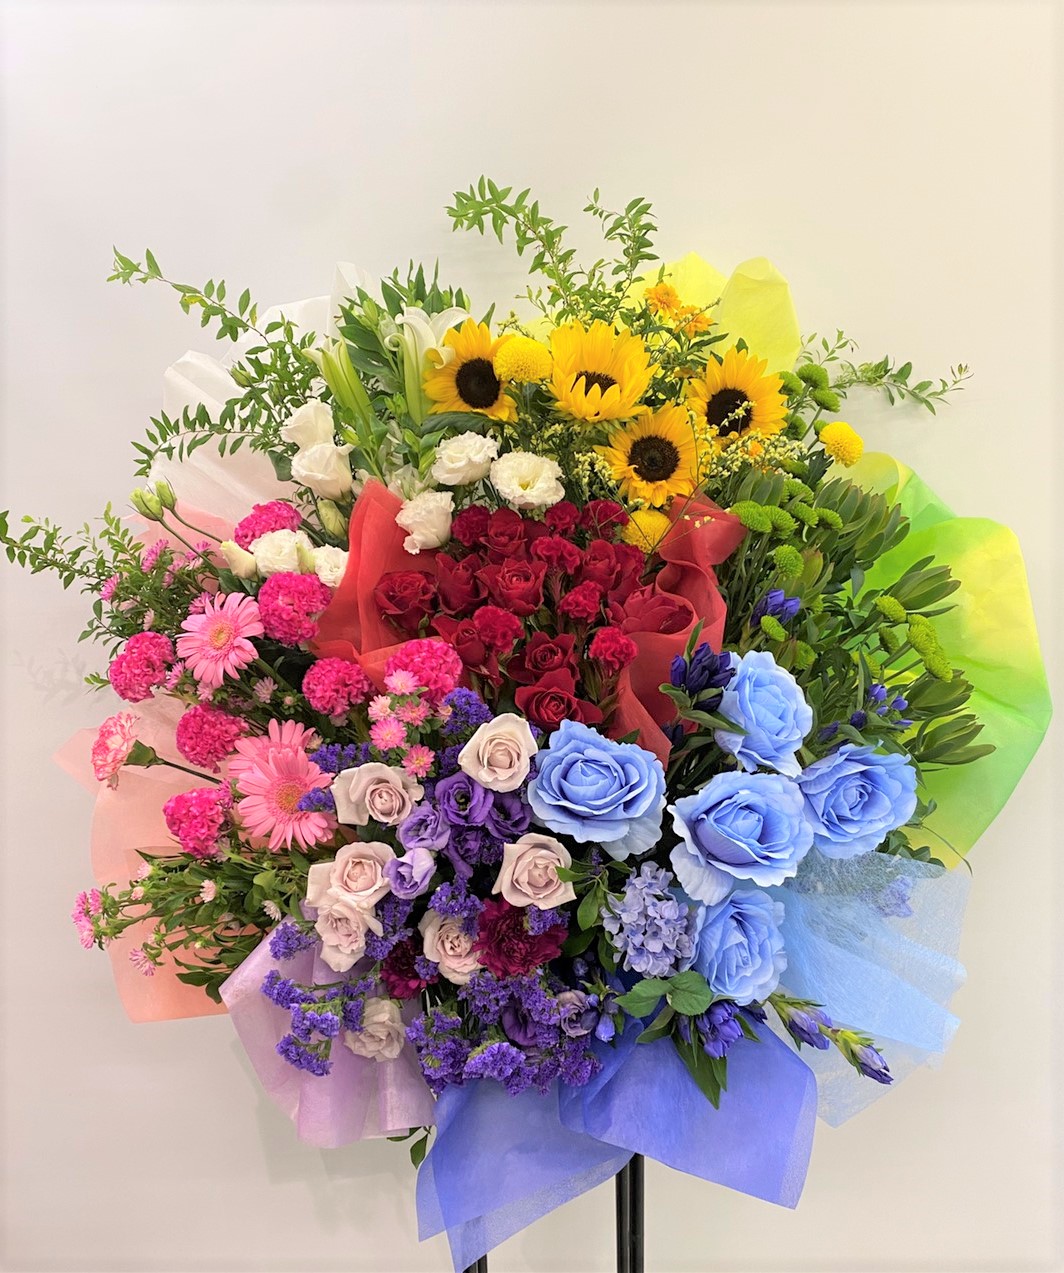 KT Zepp Yokohamaへオーダーメイドスタンド花を配達しました。【横浜花屋の花束・スタンド花・胡蝶蘭・バルーン・アレンジメント配達事例944】